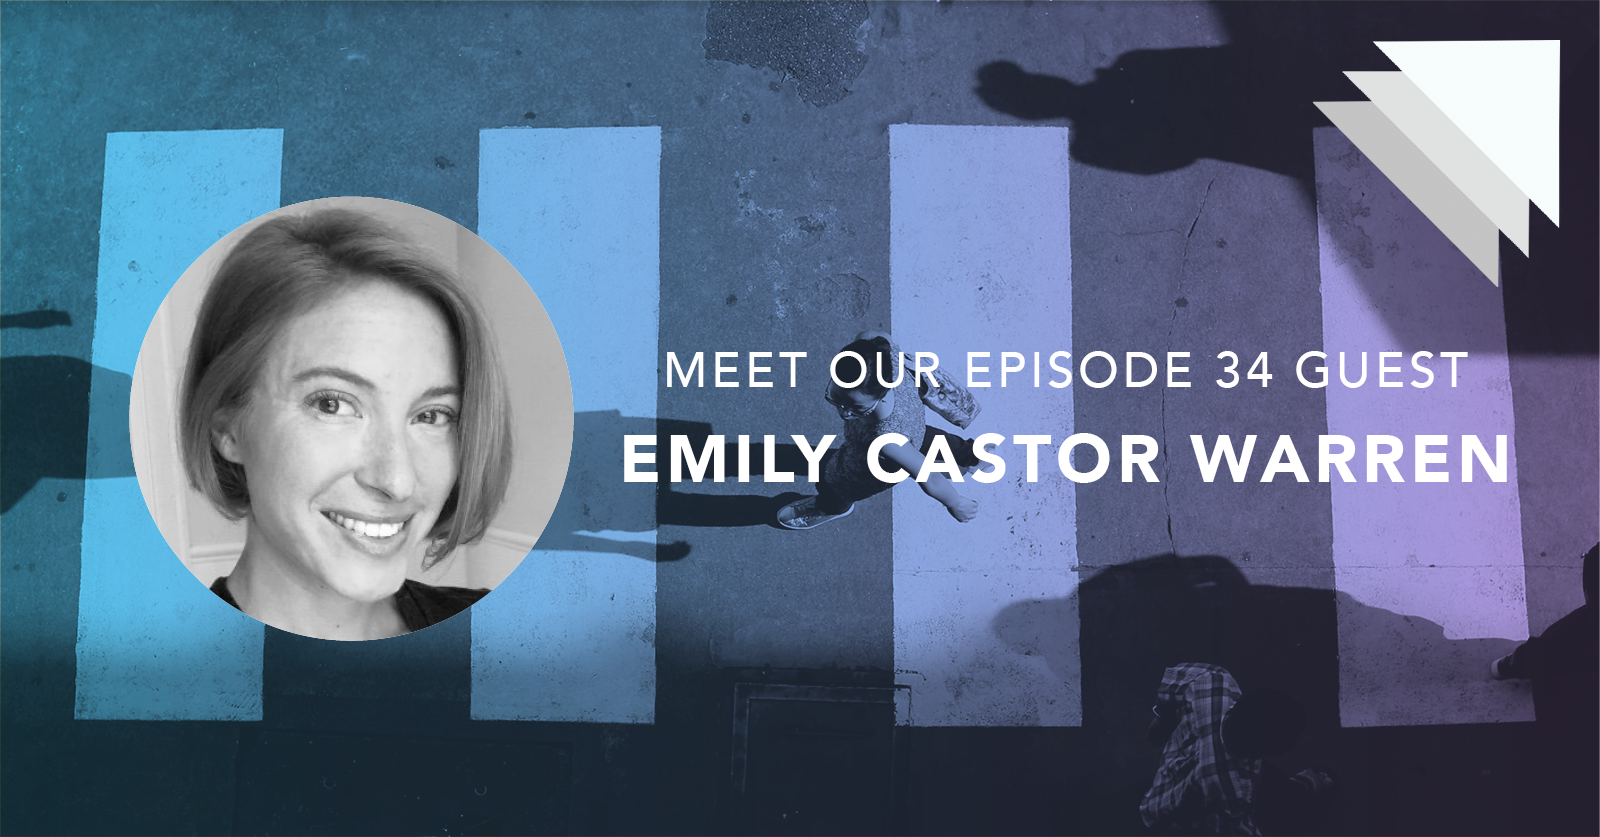 Meet our episode 34 guest Emily Castor Warren